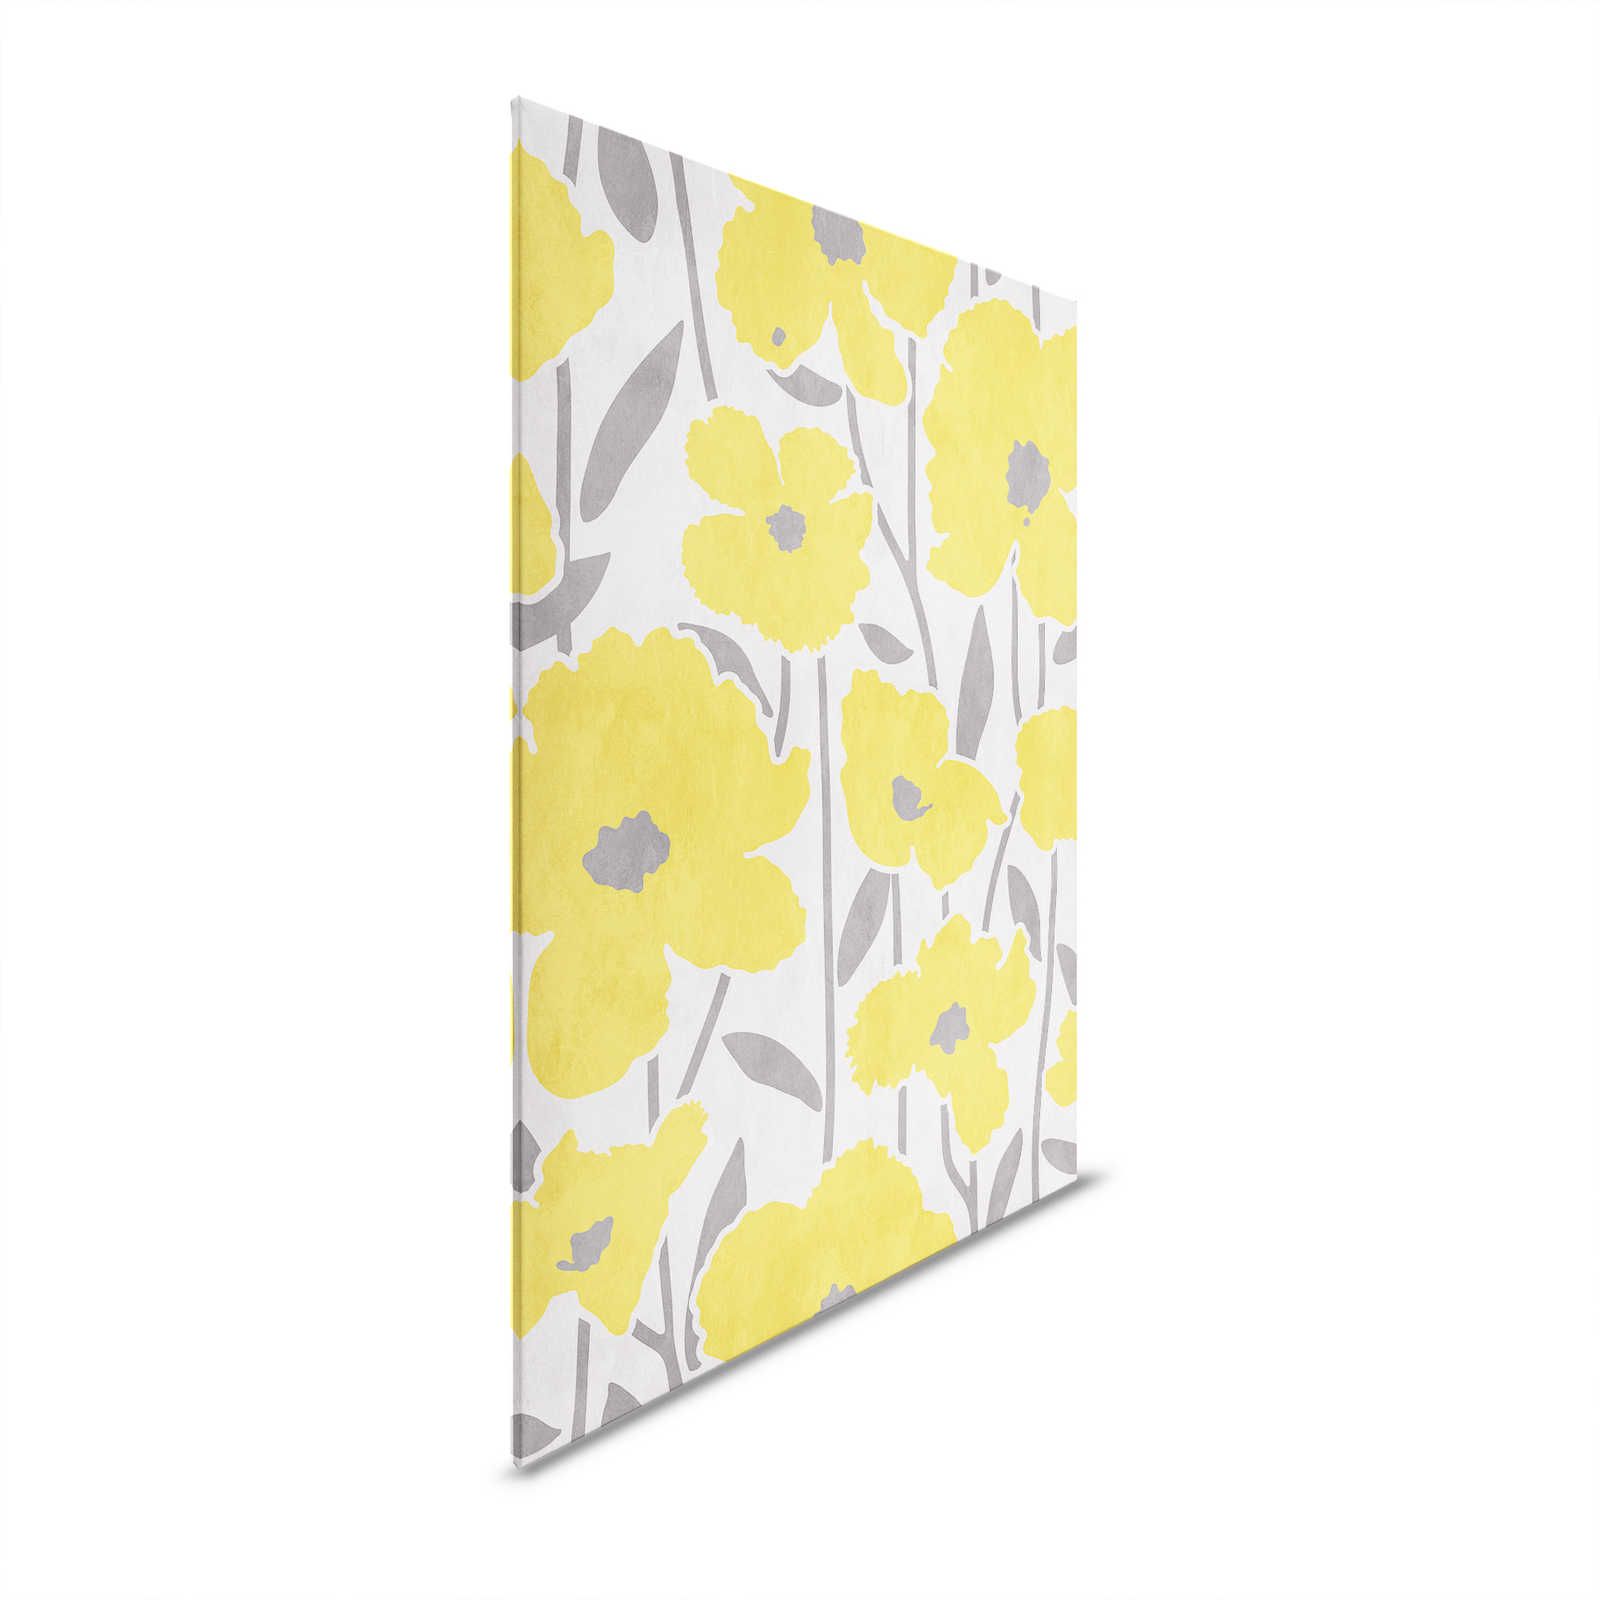 Flower Market 4 - Blumen Leinwandbild Gelb & Grau mit Putzoptik Effekt – 0,80 m x 1,20 m
